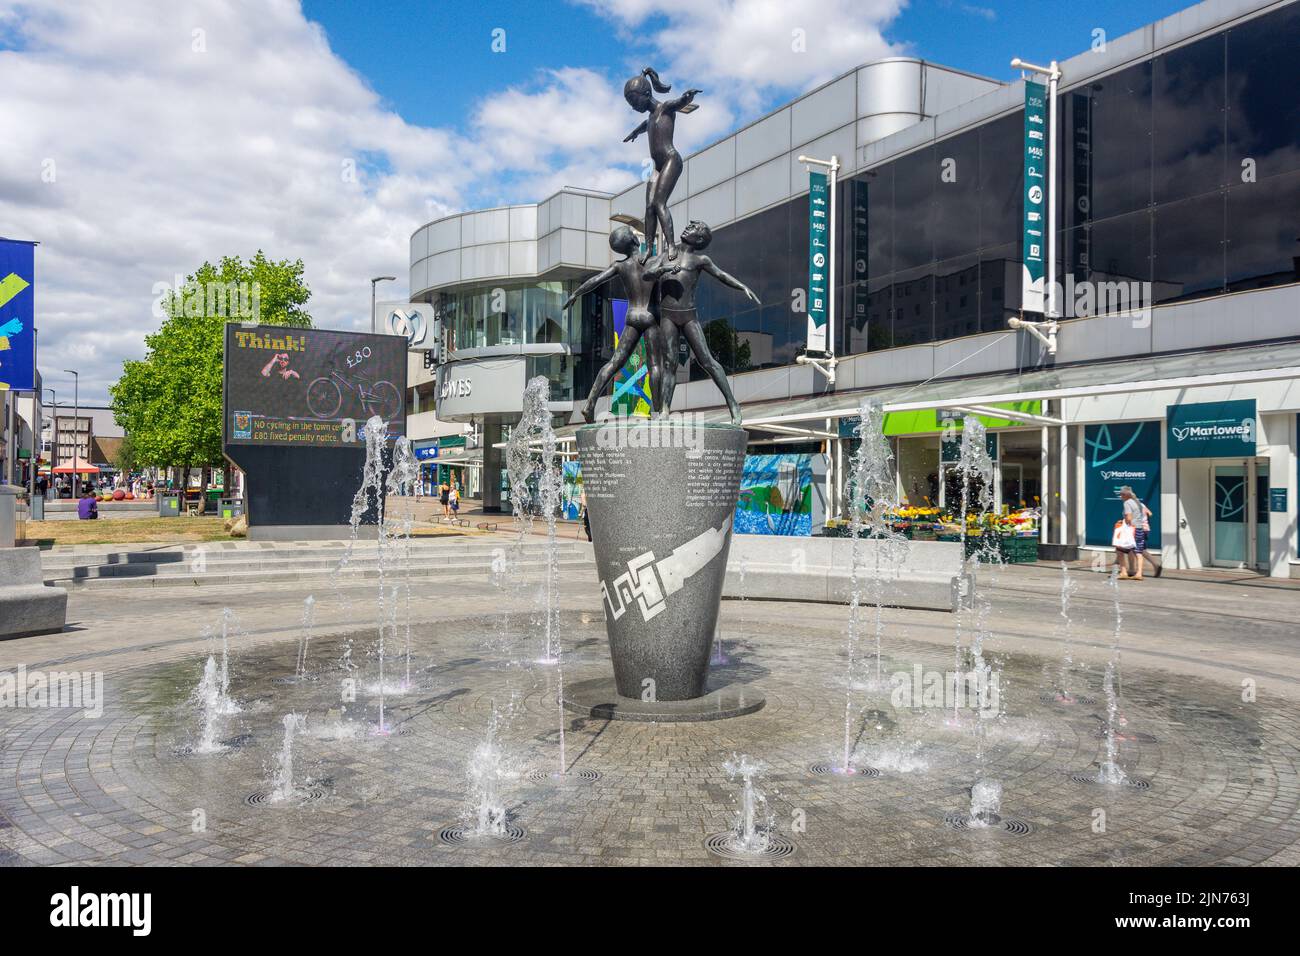 Escultura y fuente 'Waterplay' en las afueras del centro comercial Marlows, Hemel Hempstead, Hertfordshire, Inglaterra, Reino Unido Foto de stock